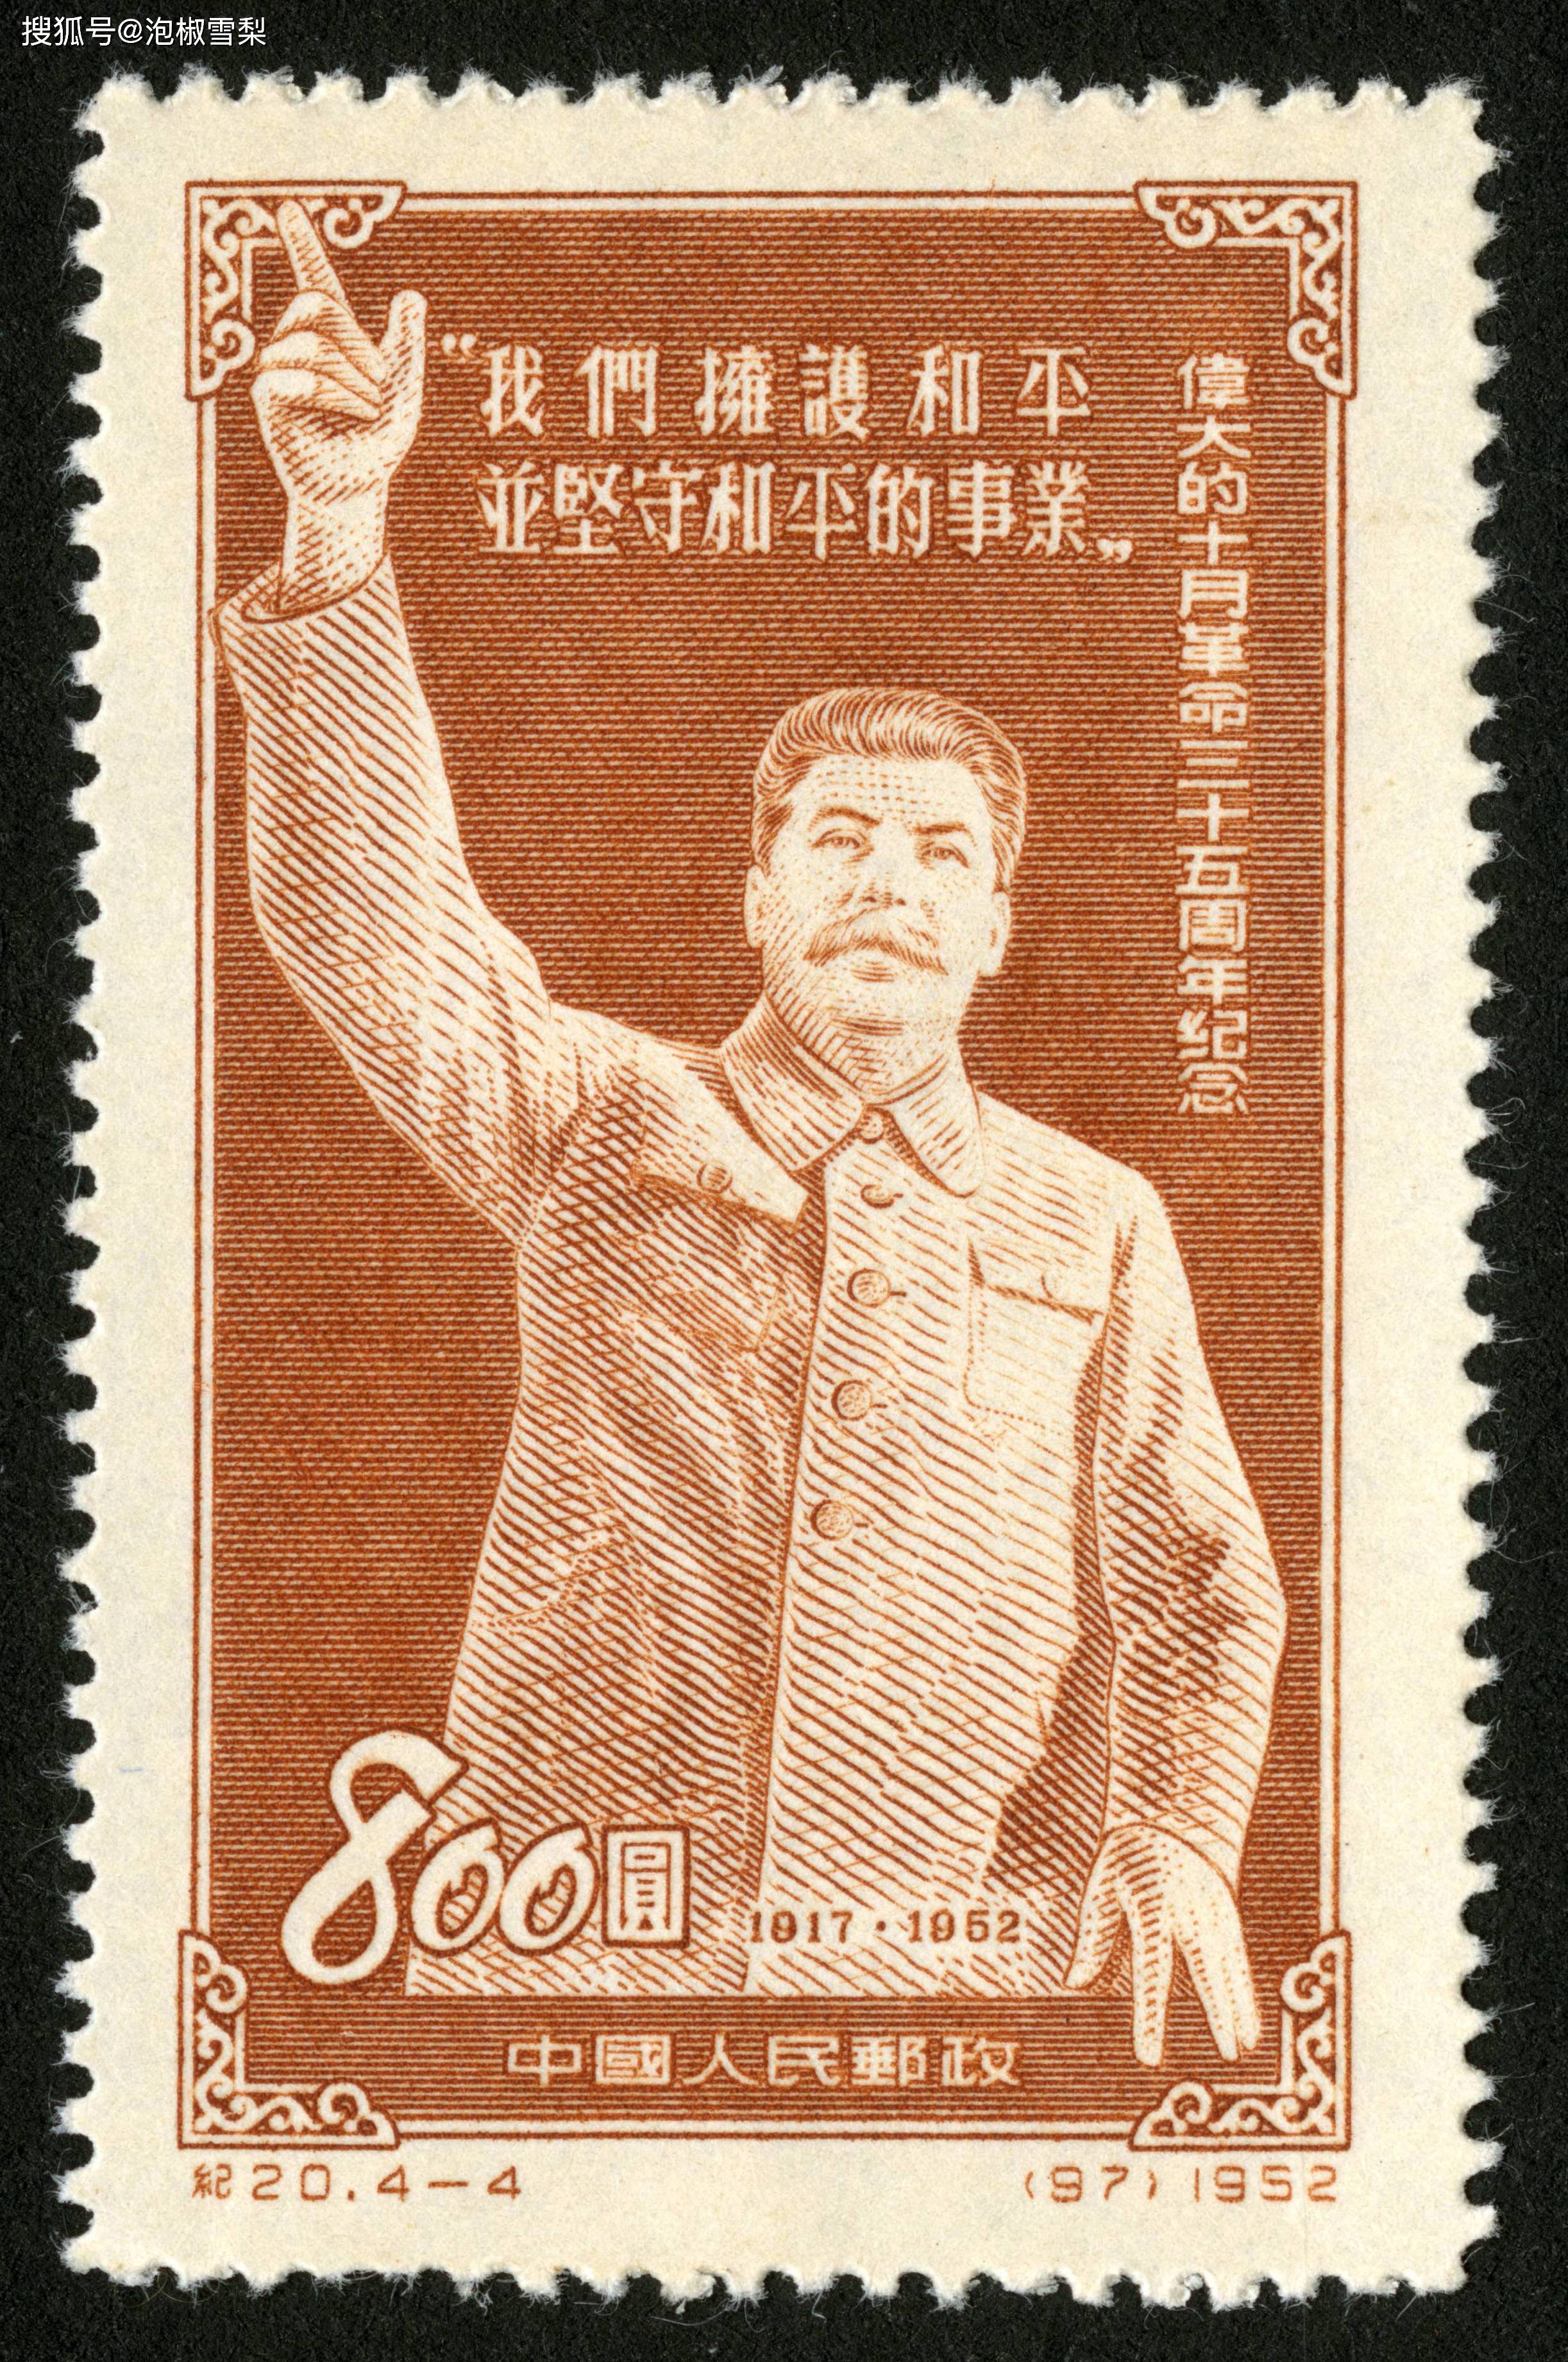 因未接到紧急通知,新中国第一套错版邮票,在湖南零售了半个月